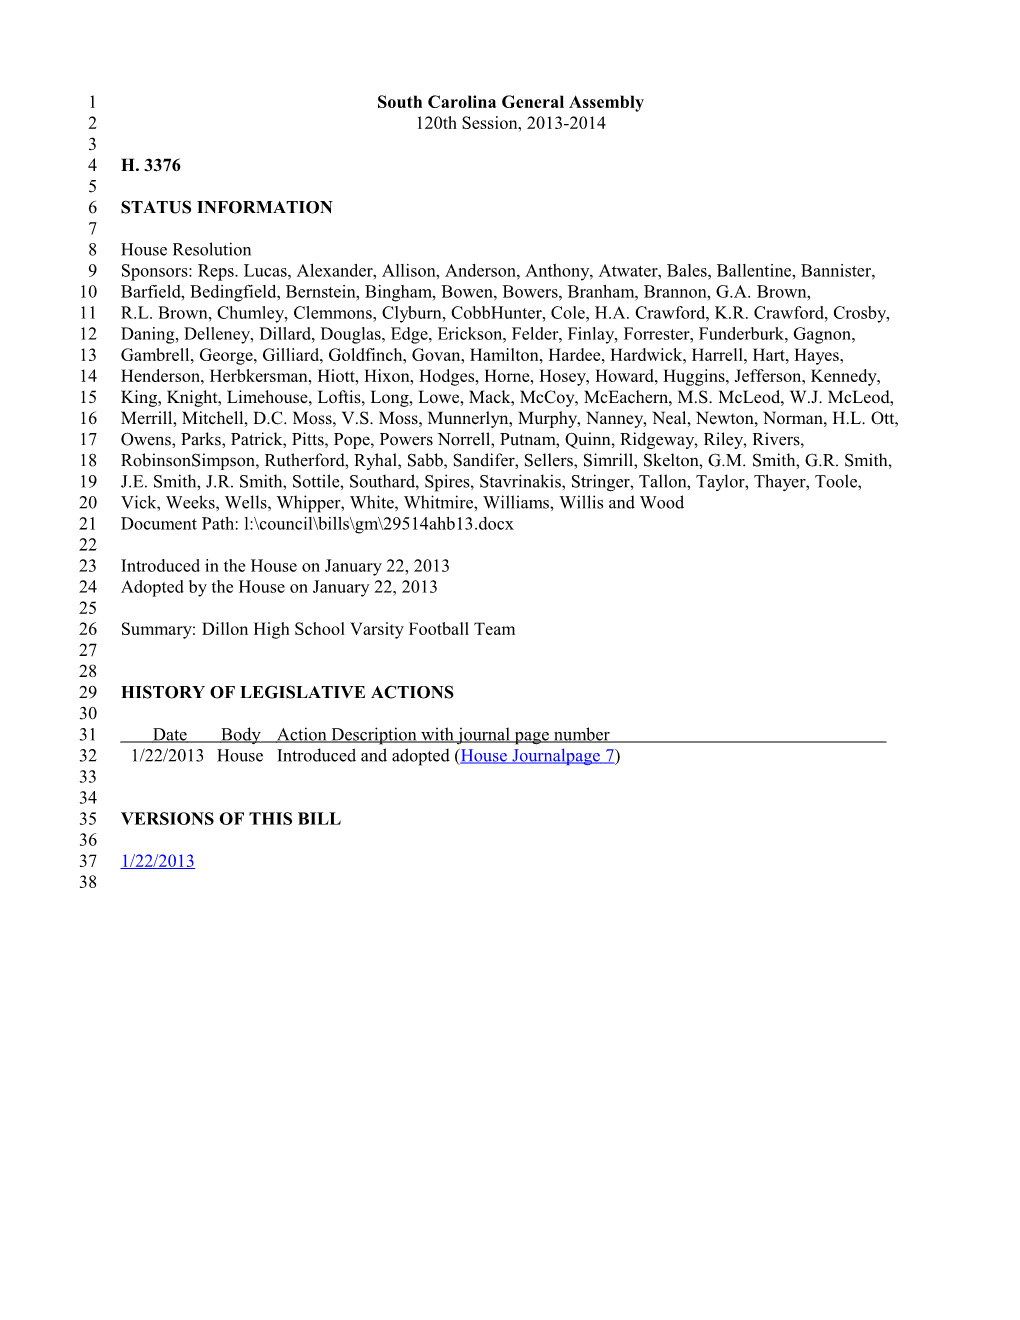 2013-2014 Bill 3376: Dillon High School Varsity Football Team - South Carolina Legislature